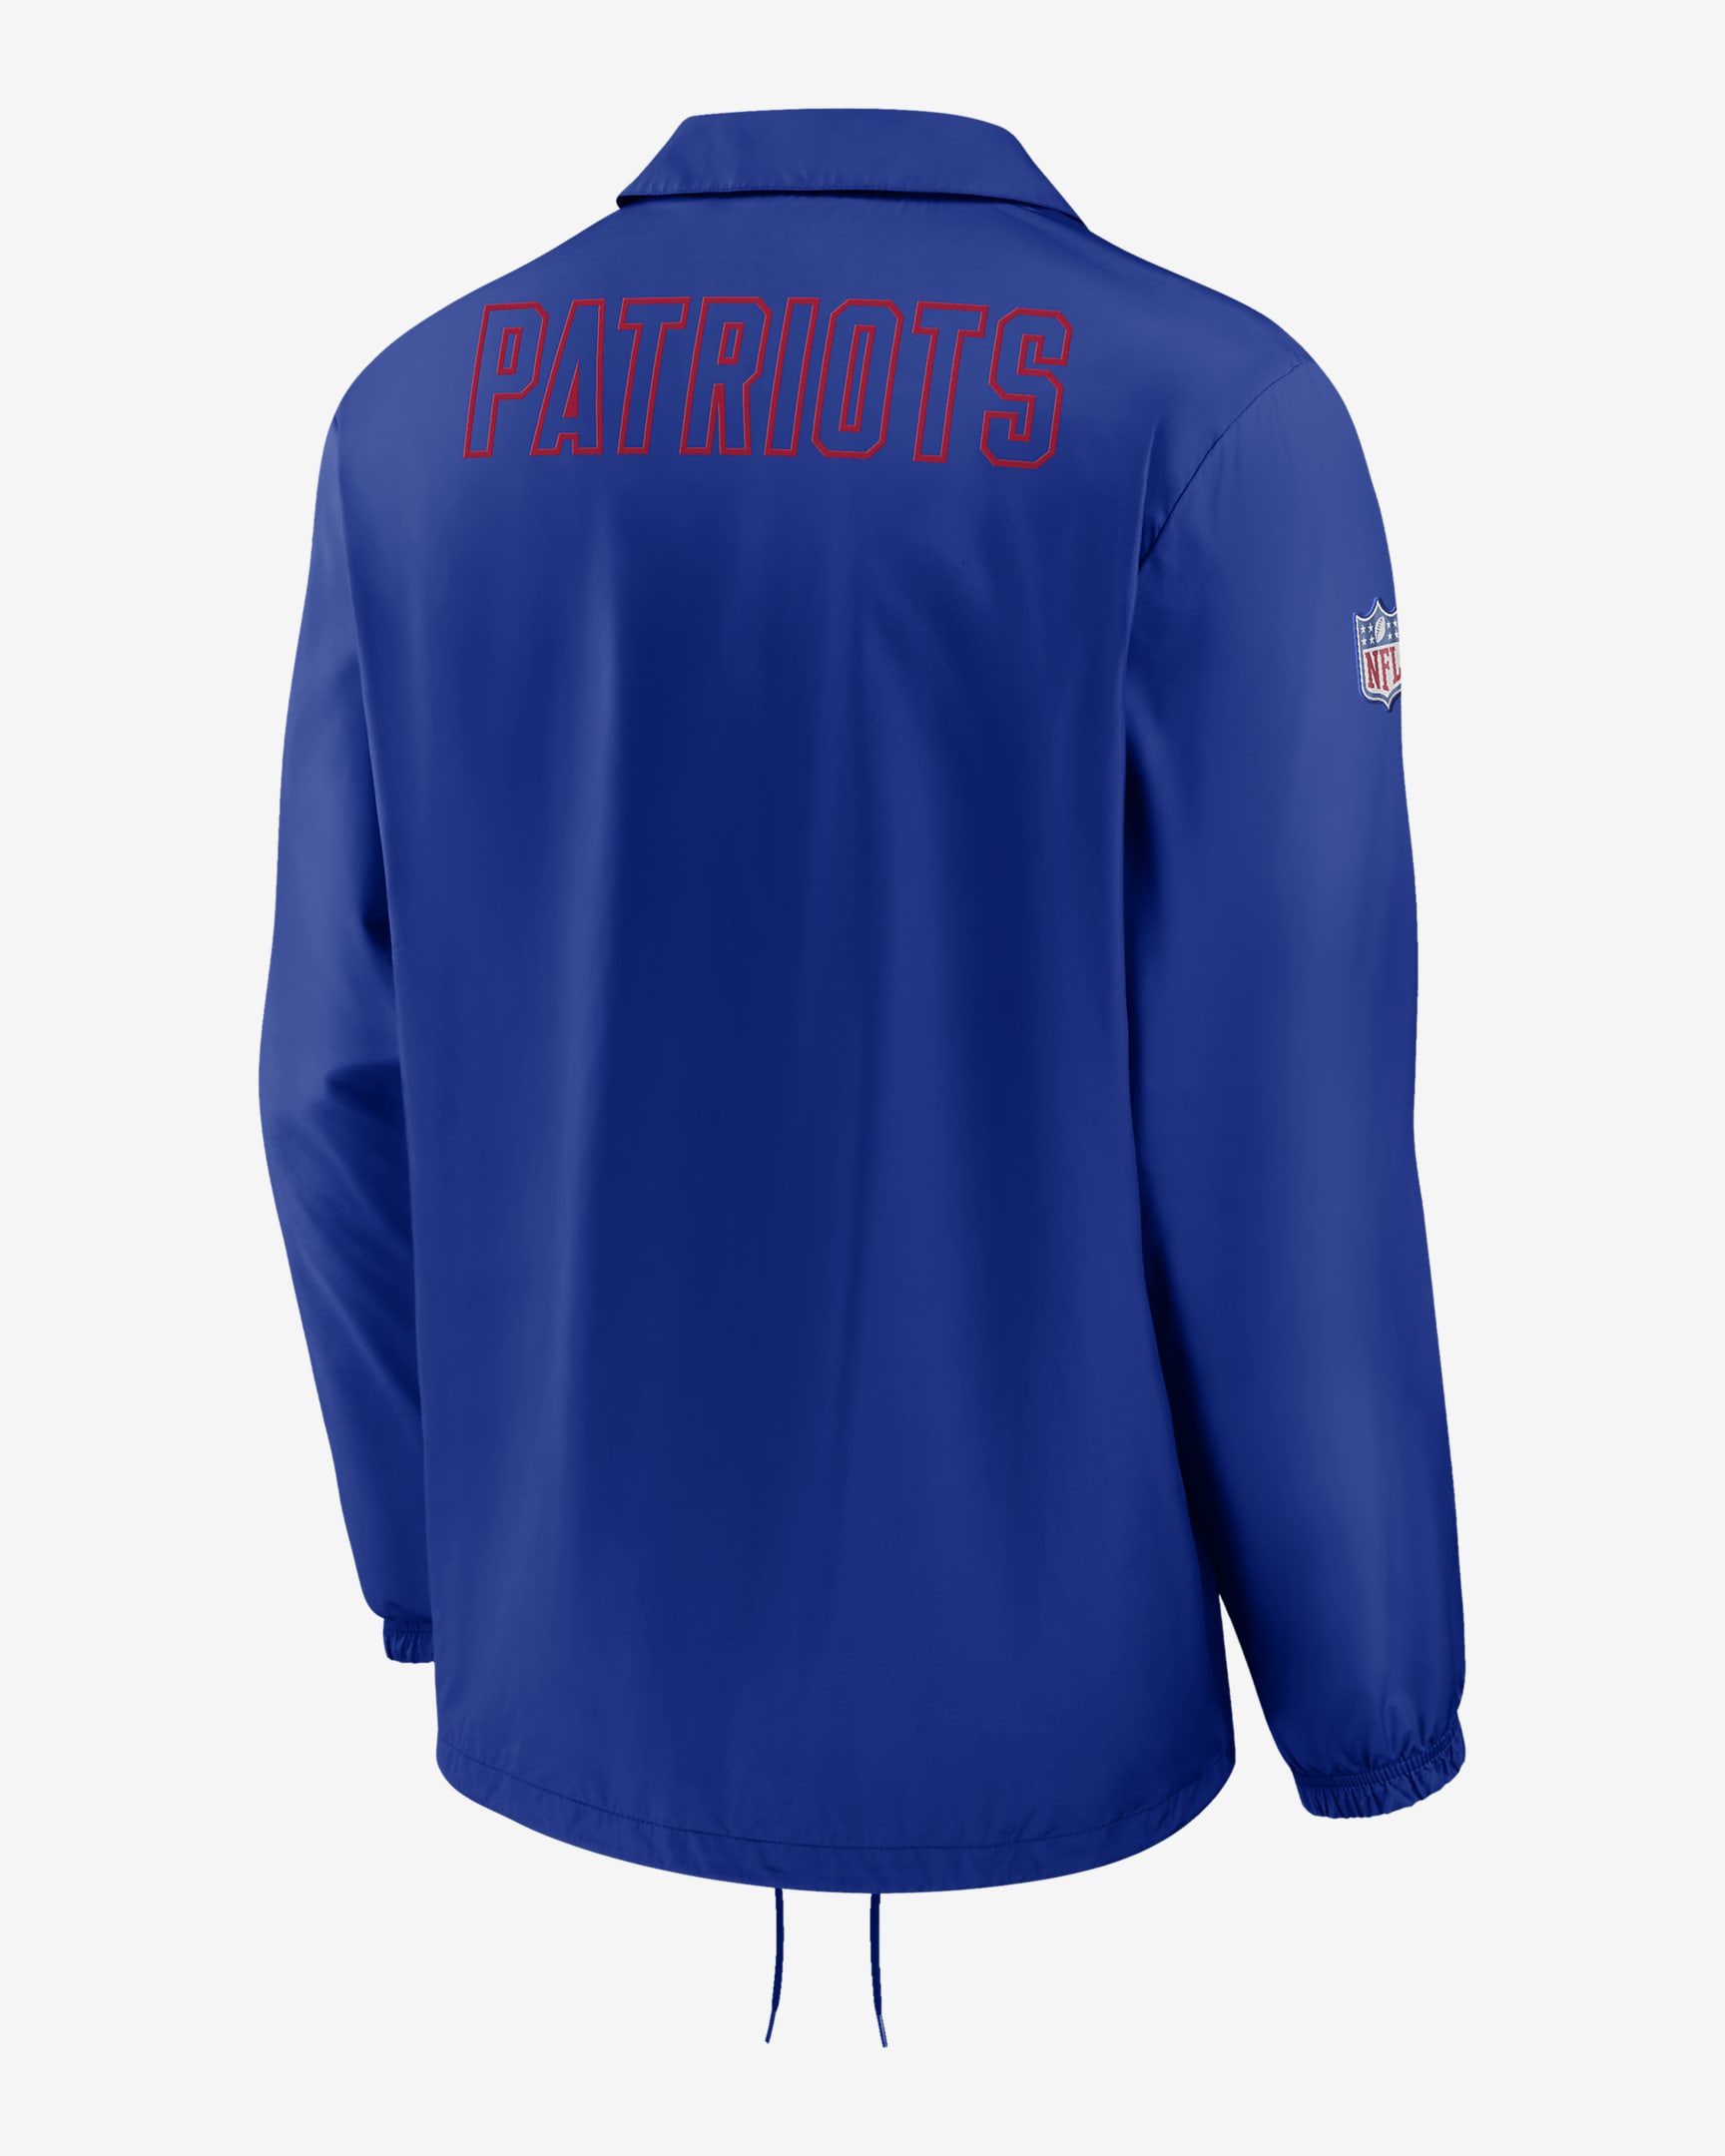 Chamarra para hombre Nike Coaches (NFL New England Patriots). Nike.com